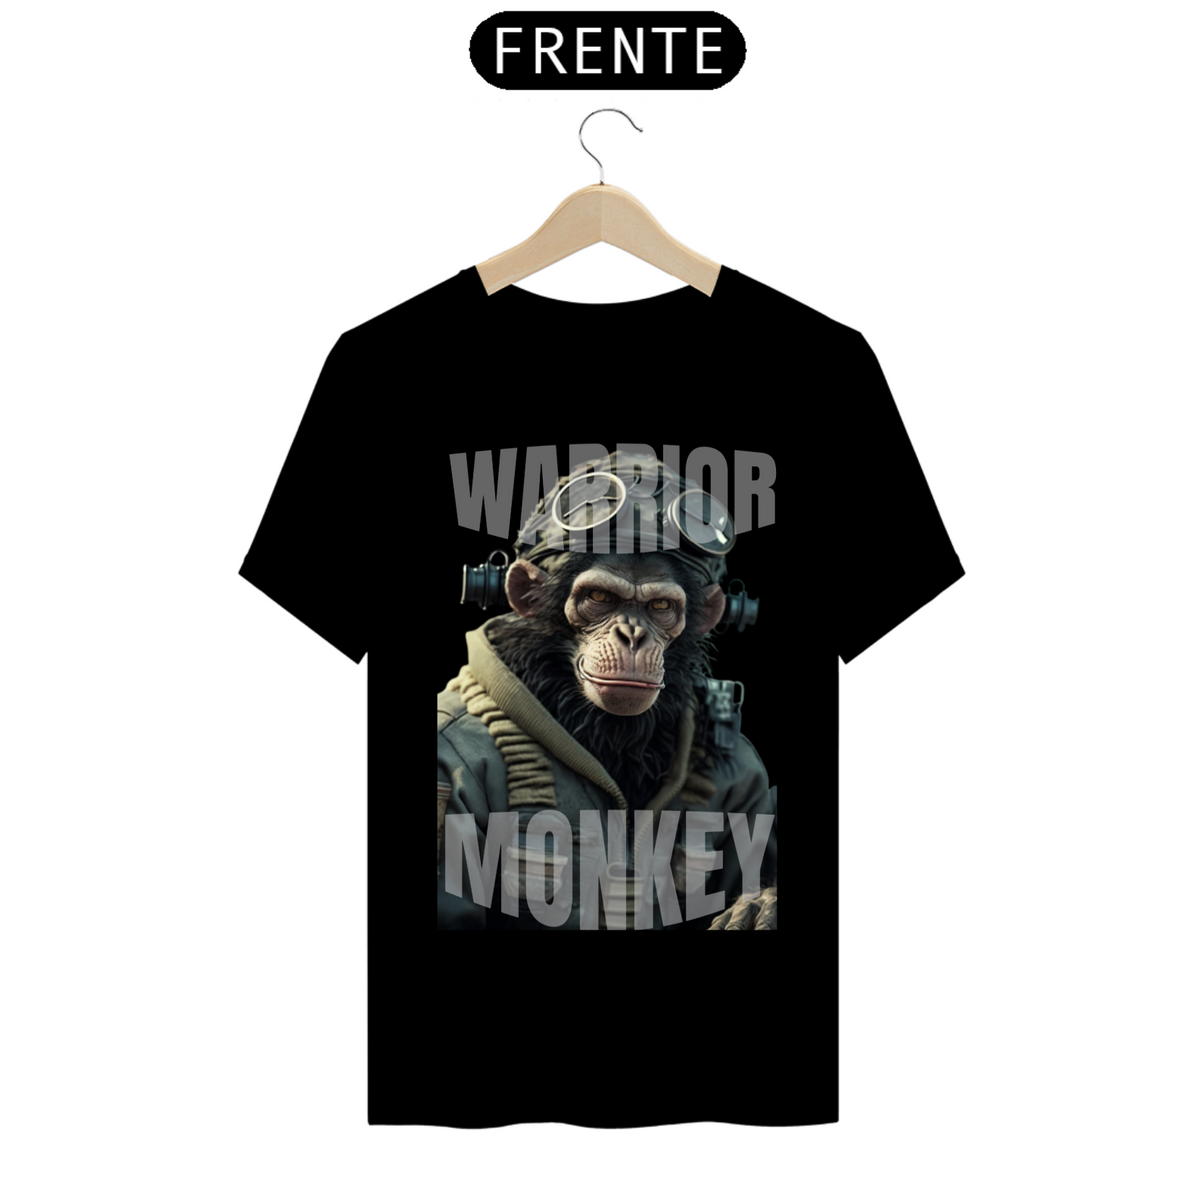 Nome do produto: Camisa Macaco Guerreiro.